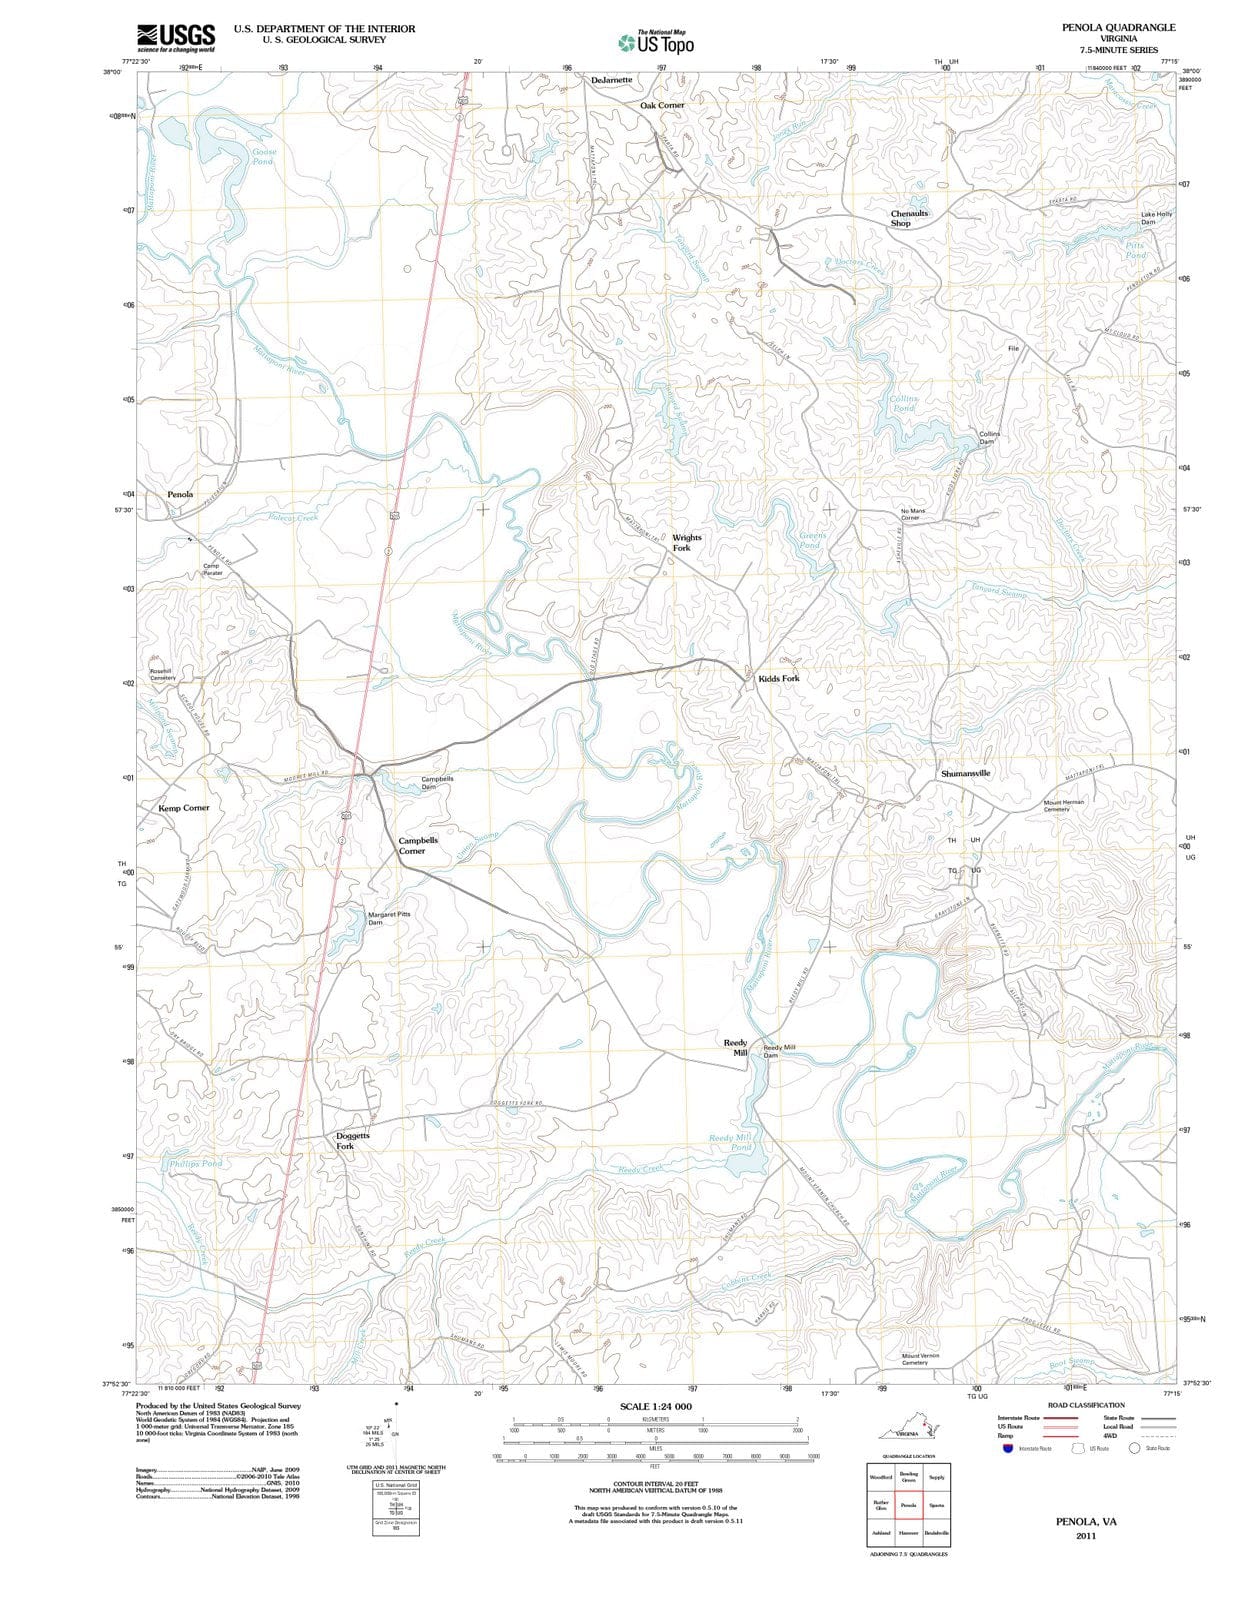 2011 Penola, VA - Virginia - USGS Topographic Map